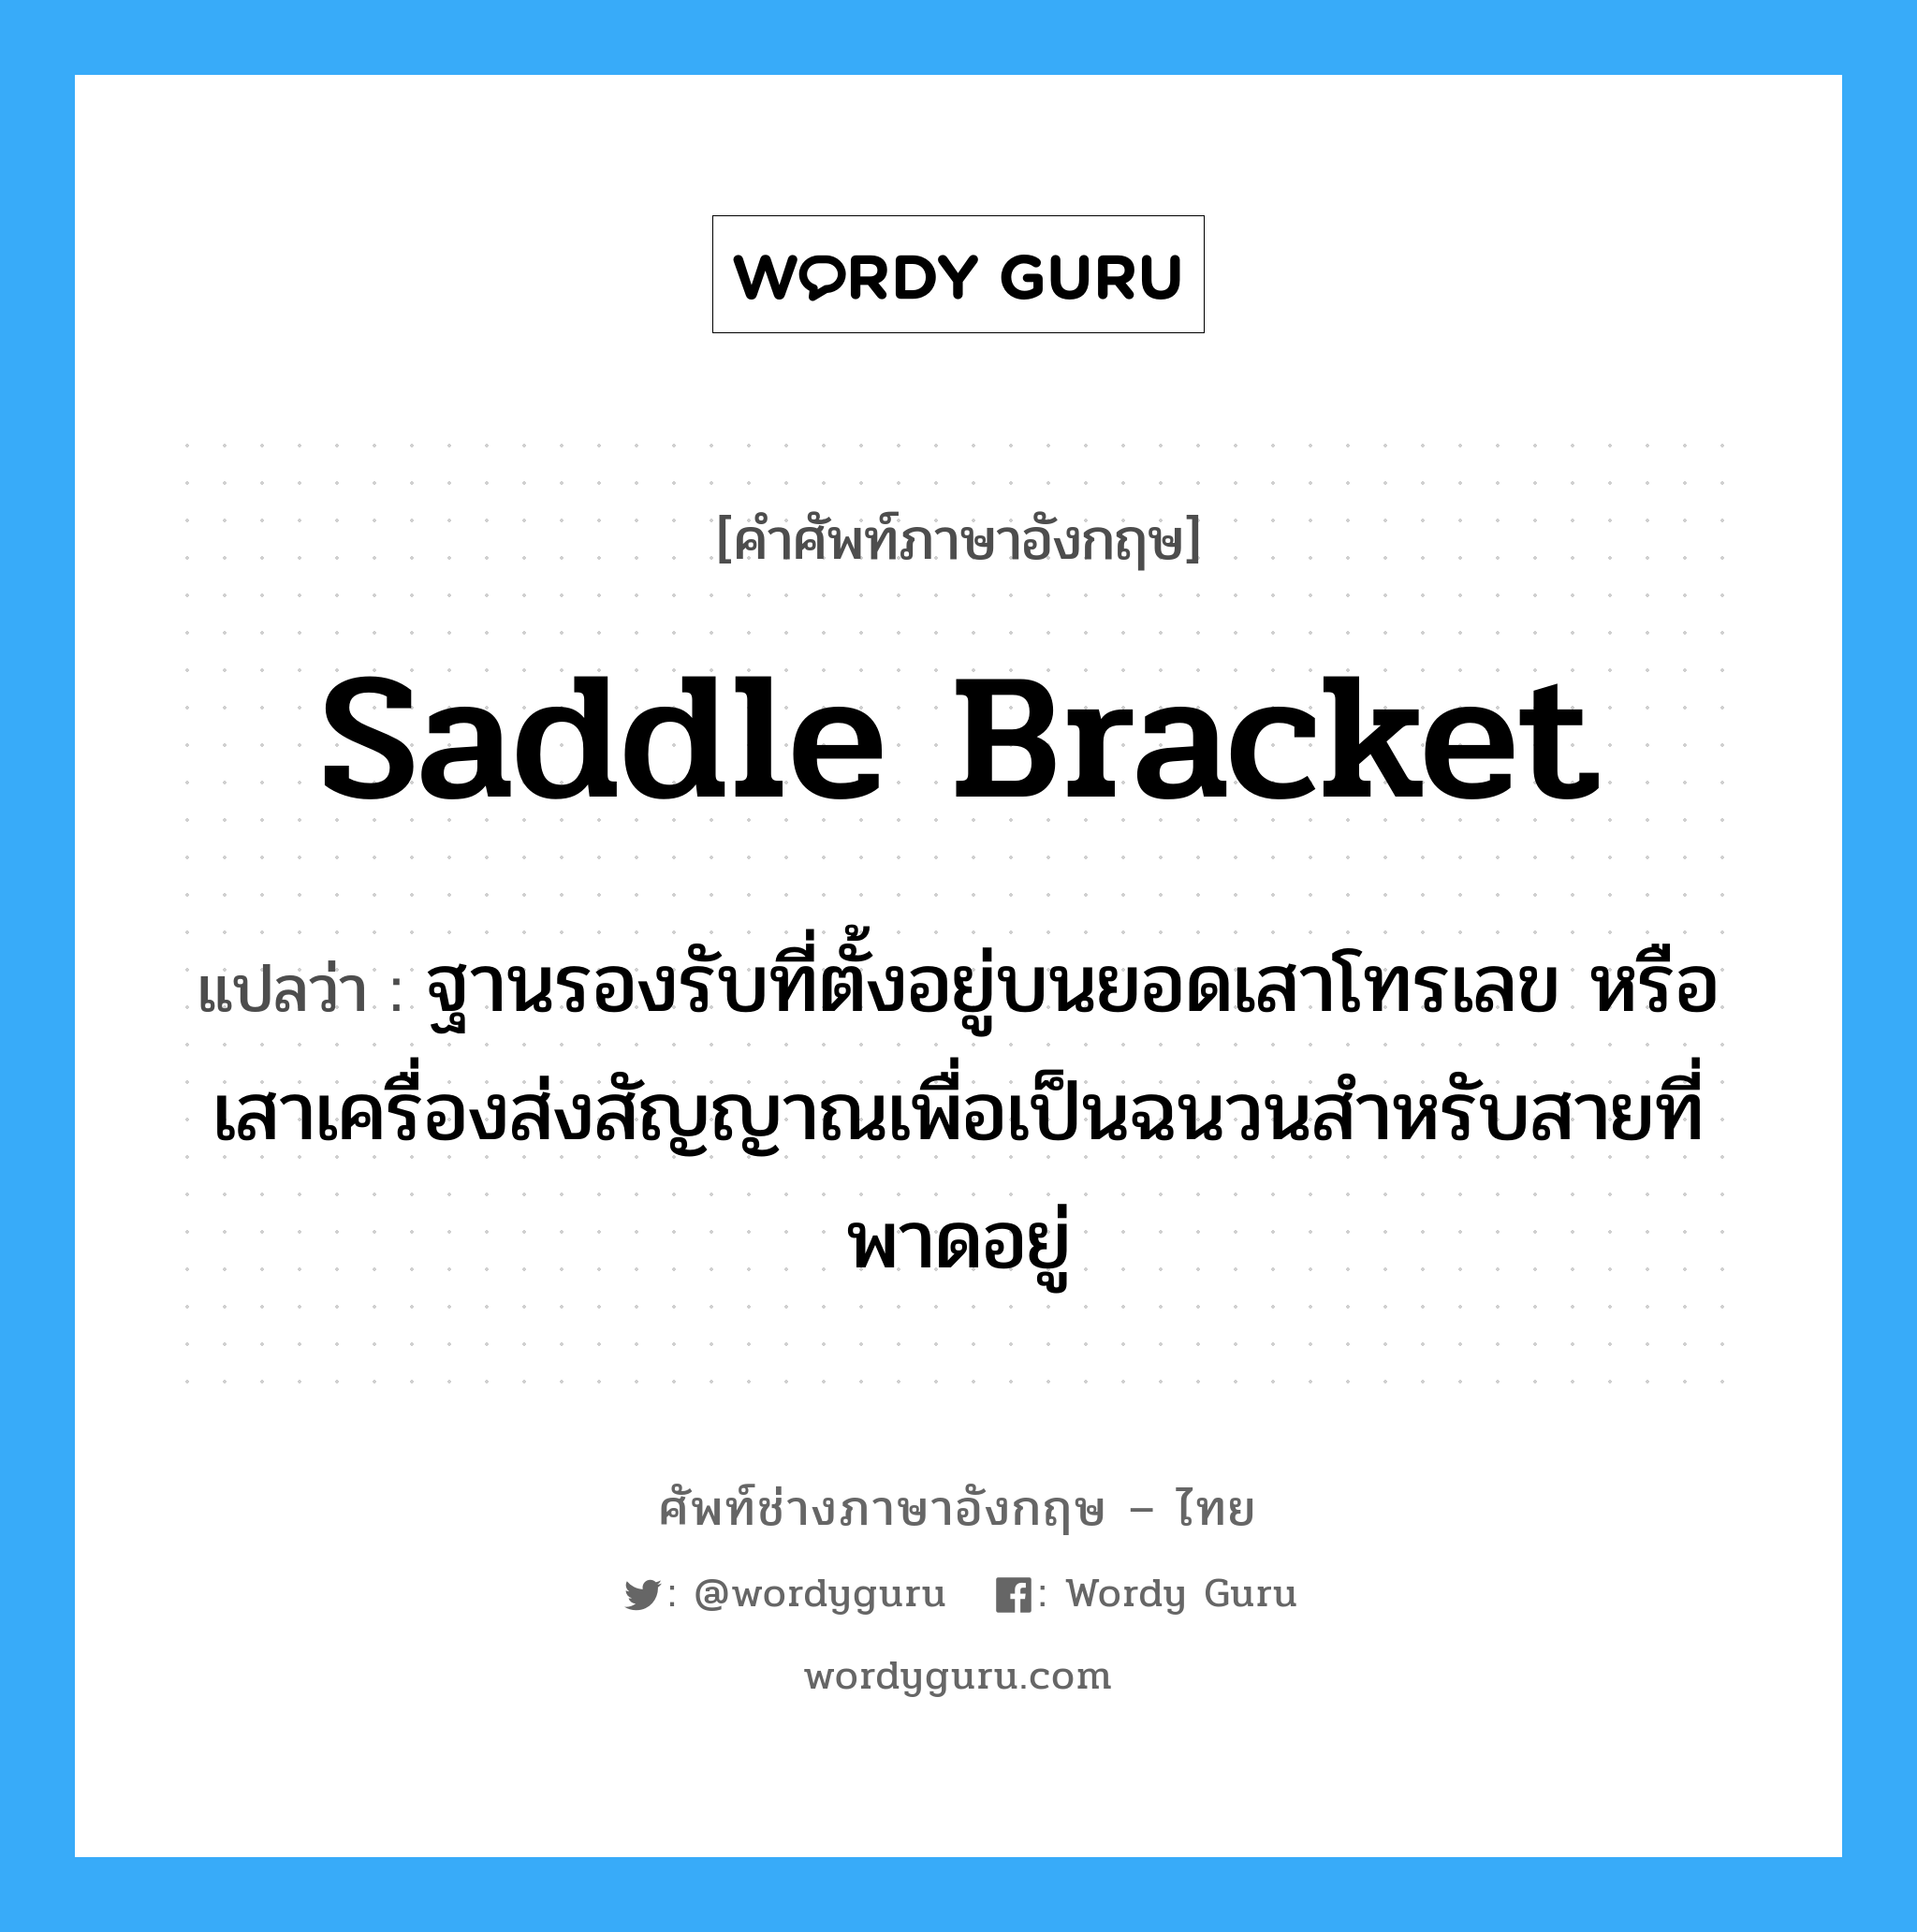 saddle bracket แปลว่า?, คำศัพท์ช่างภาษาอังกฤษ - ไทย saddle bracket คำศัพท์ภาษาอังกฤษ saddle bracket แปลว่า ฐานรองรับที่ตั้งอยู่บนยอดเสาโทรเลข หรือเสาเครื่องส่งสัญญาณเพื่อเป็นฉนวนสำหรับสายที่พาดอยู่